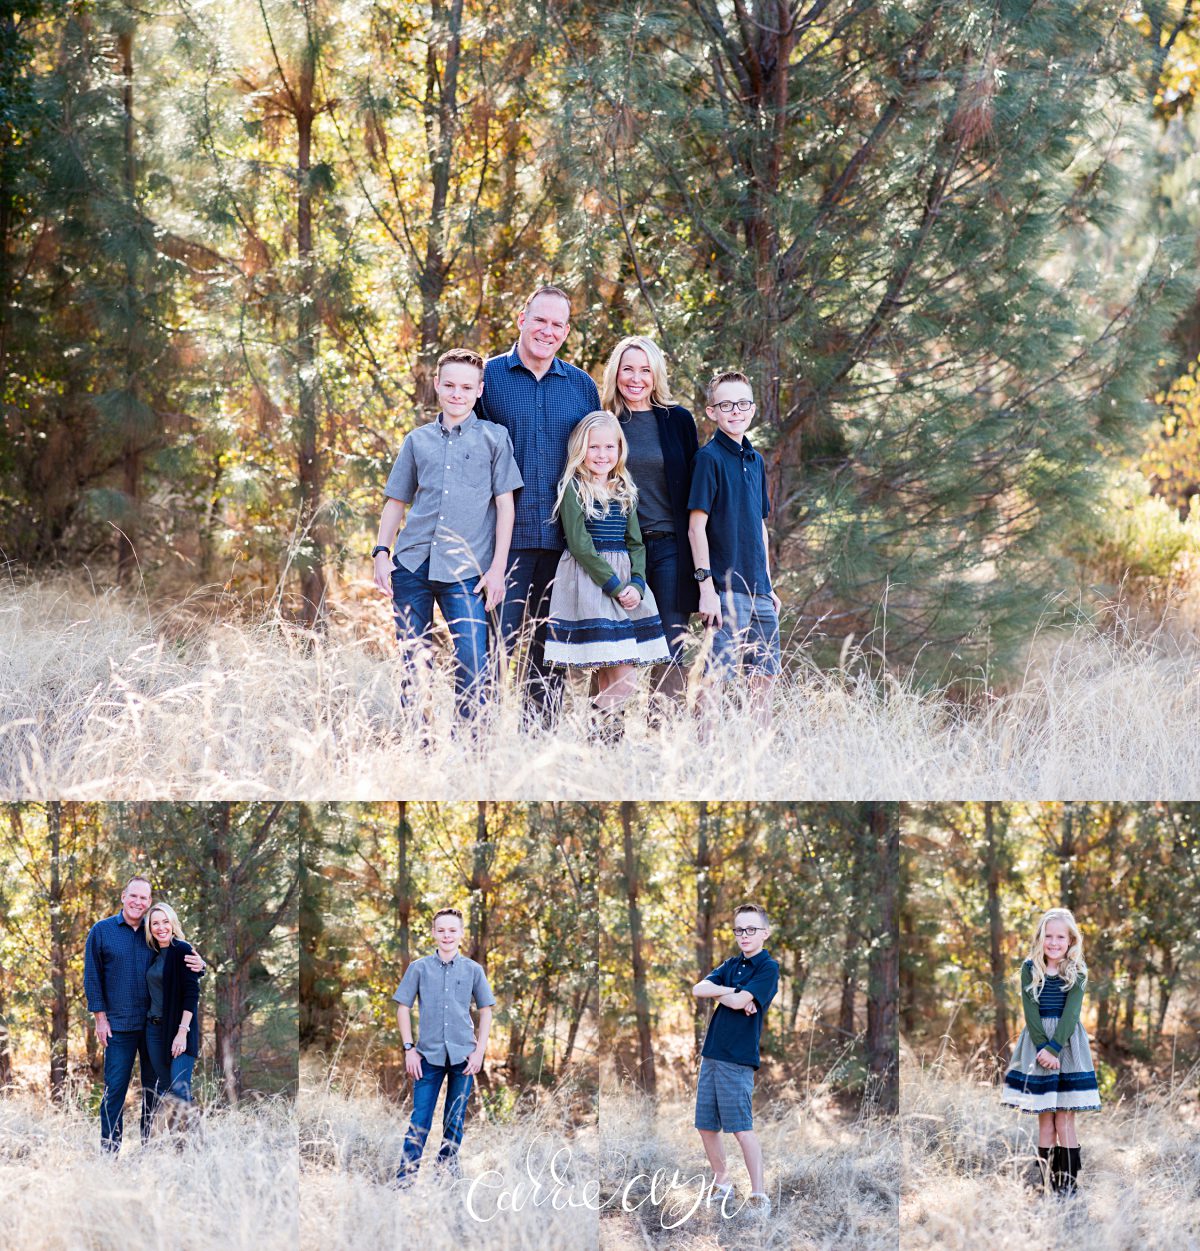 Carrie Ayn; Cameron Park Photographer; Family; El Dorado Hills Photographer; Sacramento Photographer